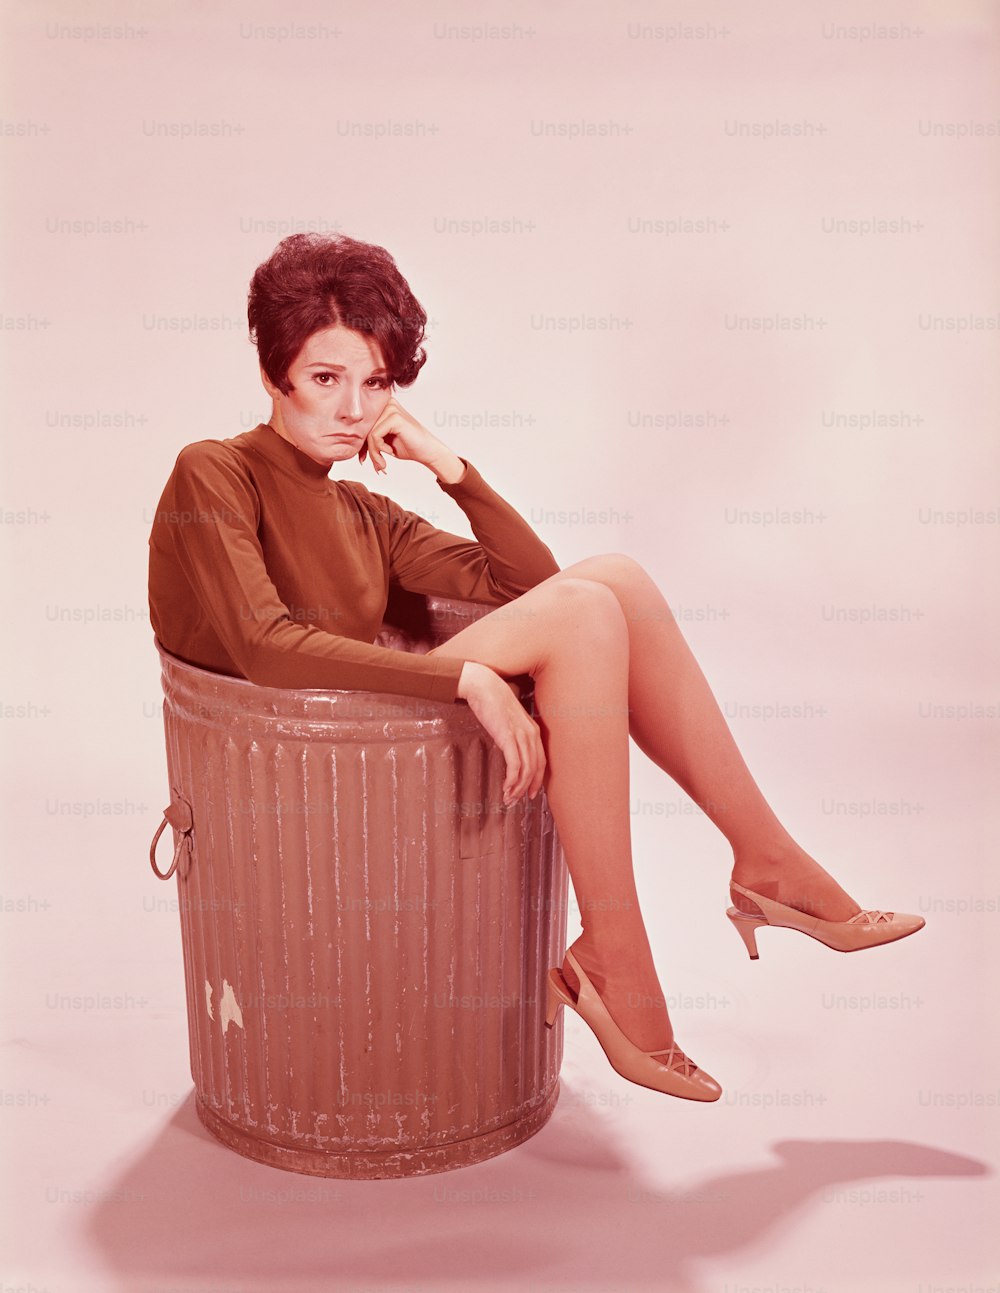 ETATS-UNIS - Vers les années 1960 : Jeune femme dans une poubelle avec des jambes pendantes.